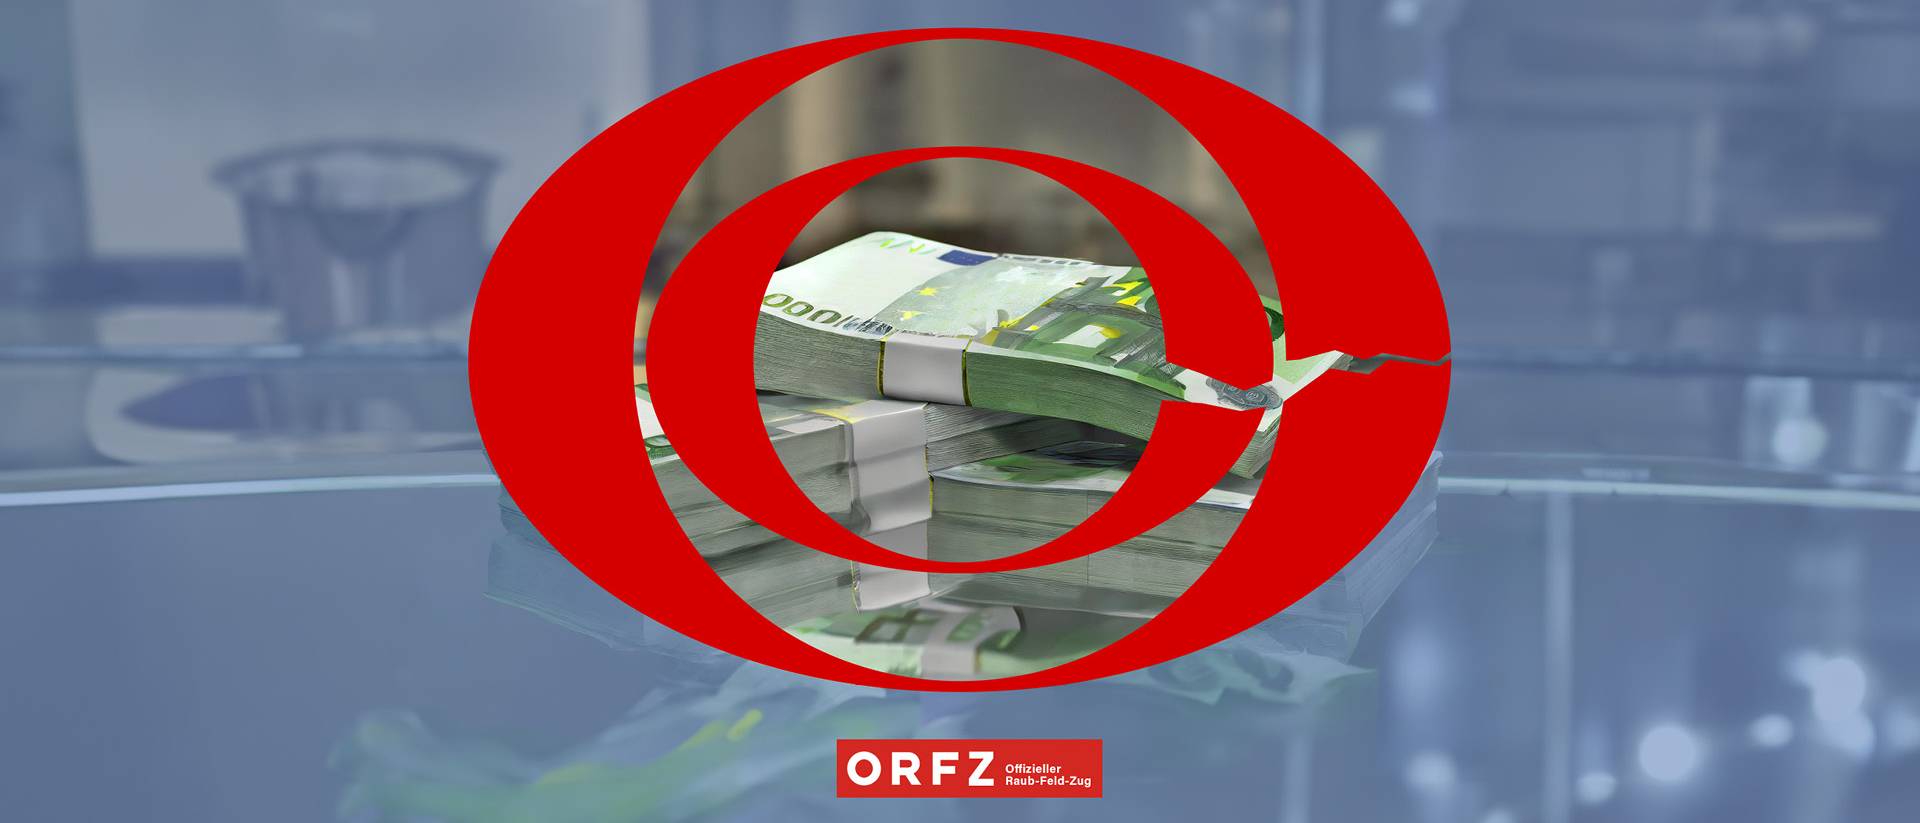 ORFZ – Offizieller Raub-Feld-Zug